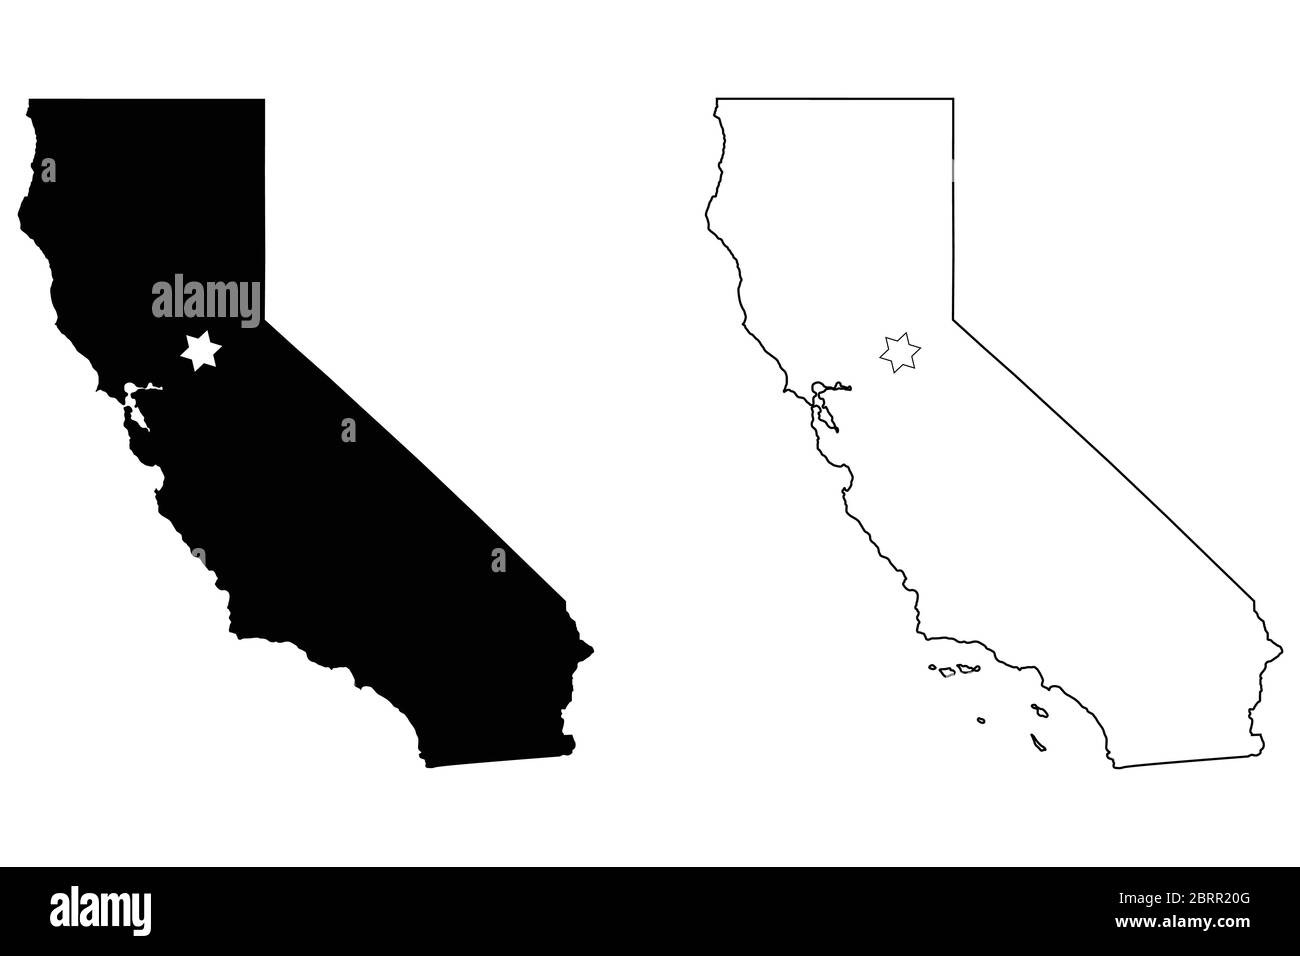 Kalifornien CA State Map USA mit Capital City Star in Sacramento. Schwarze Silhouette und umreißen isolierte Karten auf weißem Hintergrund. EPS-Vektor Stock Vektor